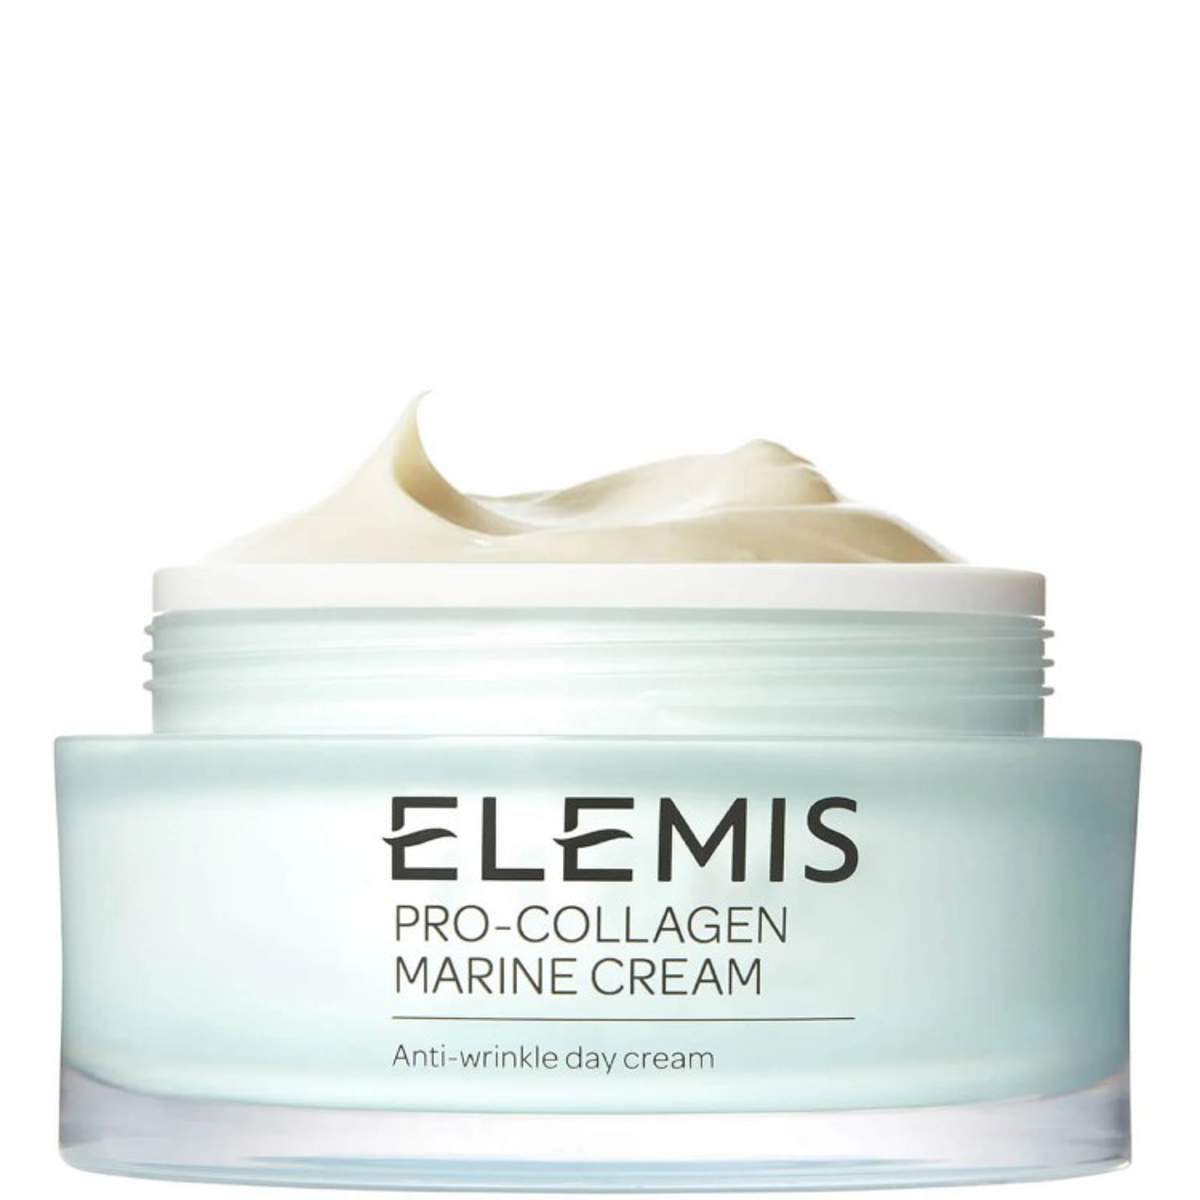 Elemis Pro Collagen Marine Cream con un 40% de descuento en Amazon Producto 2